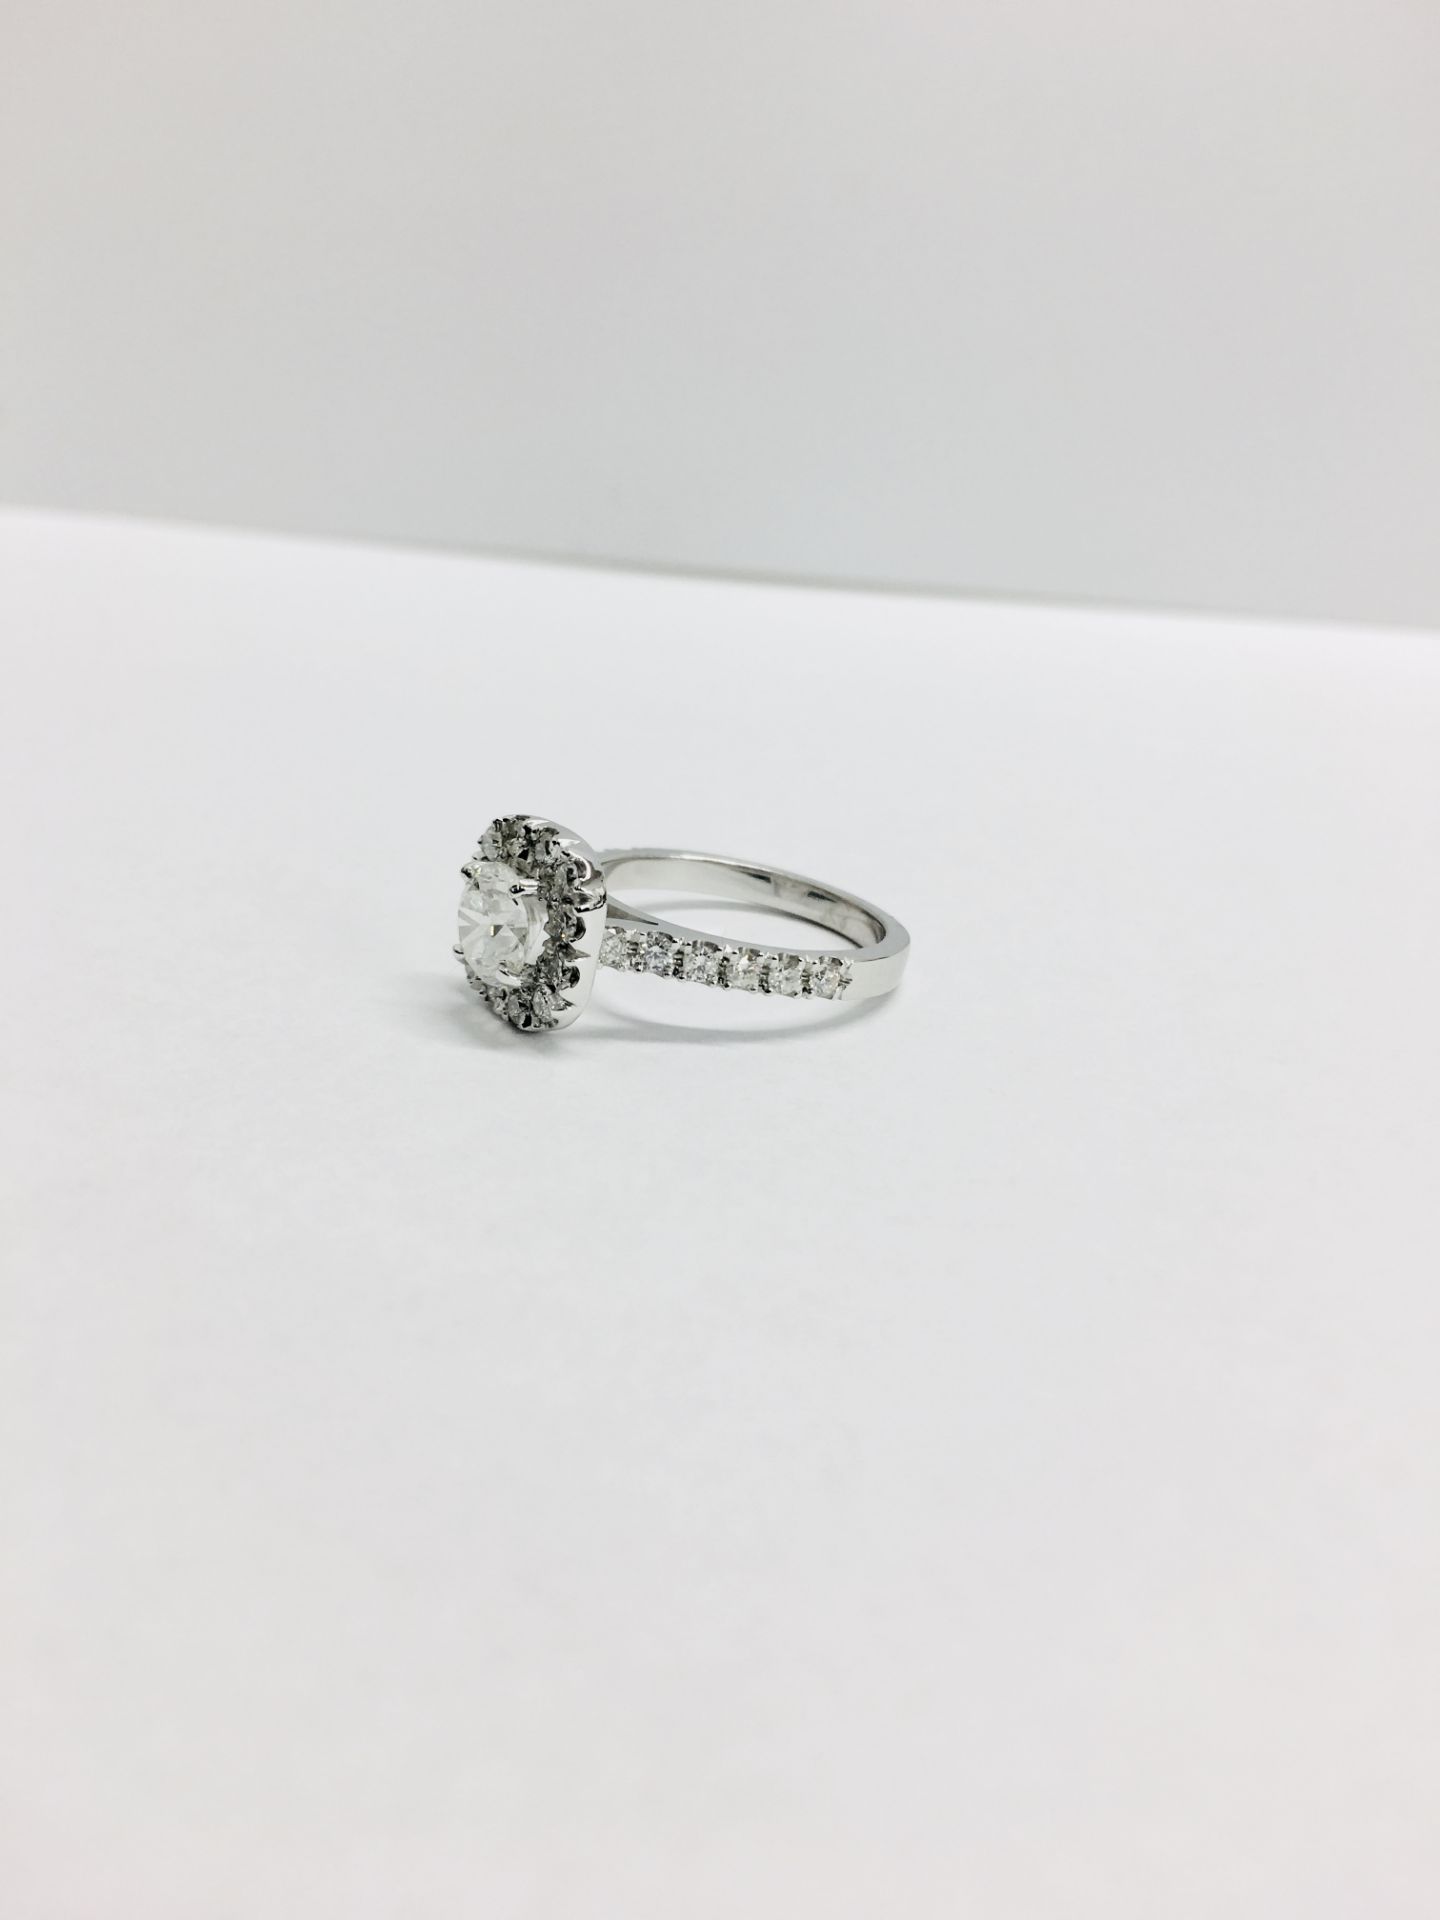 18ct white gold Halo style Diamond ring,0.50ct brilliant cut centre,h colour vs clarity,0.25ct - Image 2 of 6